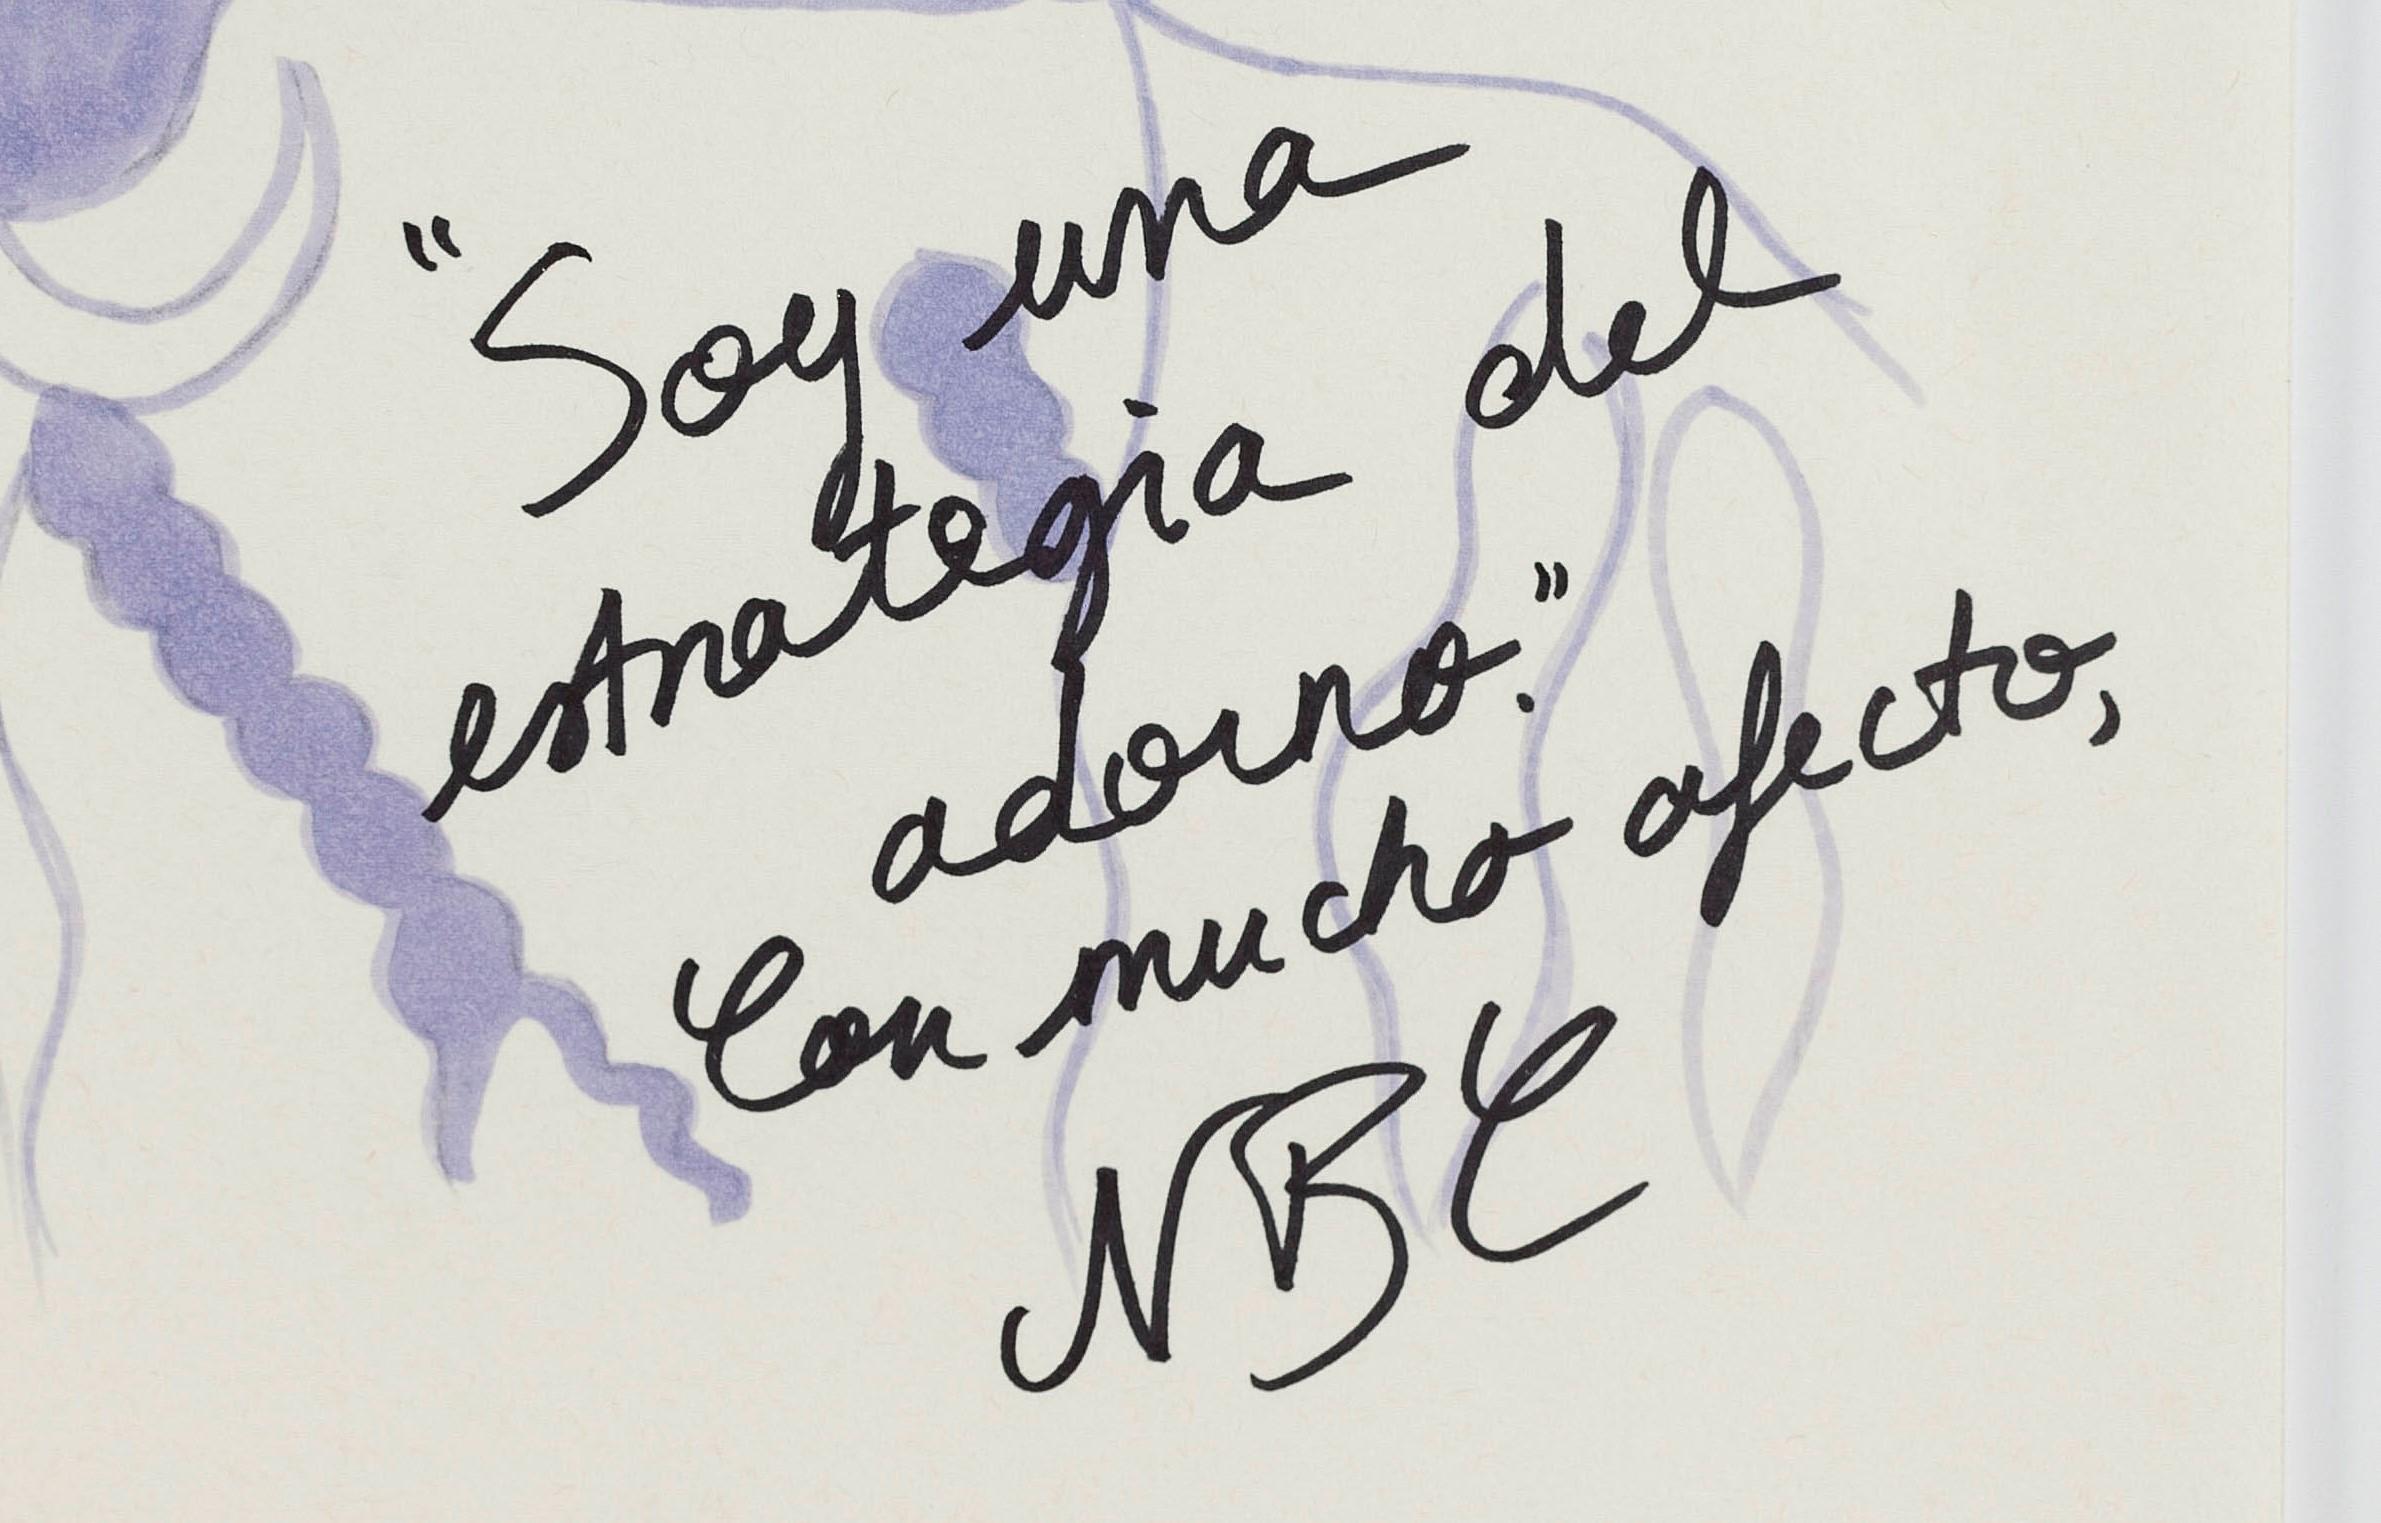 Pola Negri III. Zeichnung aus der Serie The Dis-enchanted. – Art von Paloma Castello